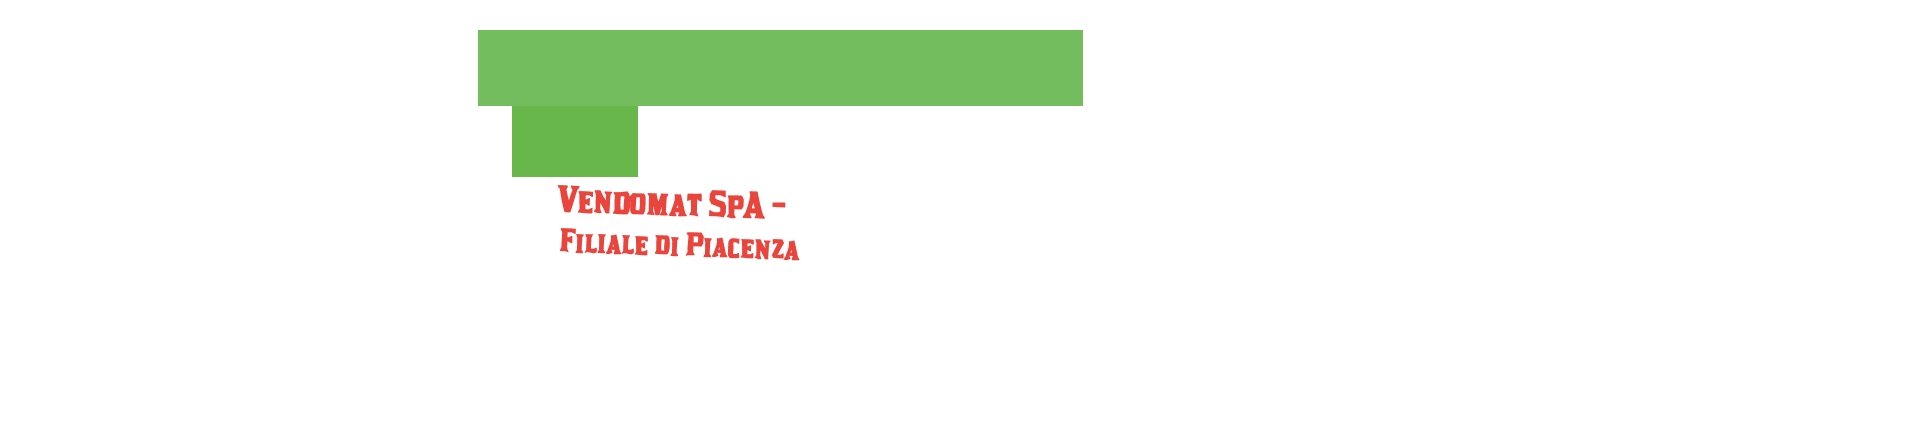 logo Vendomat SpA - Filiale di Piacenza